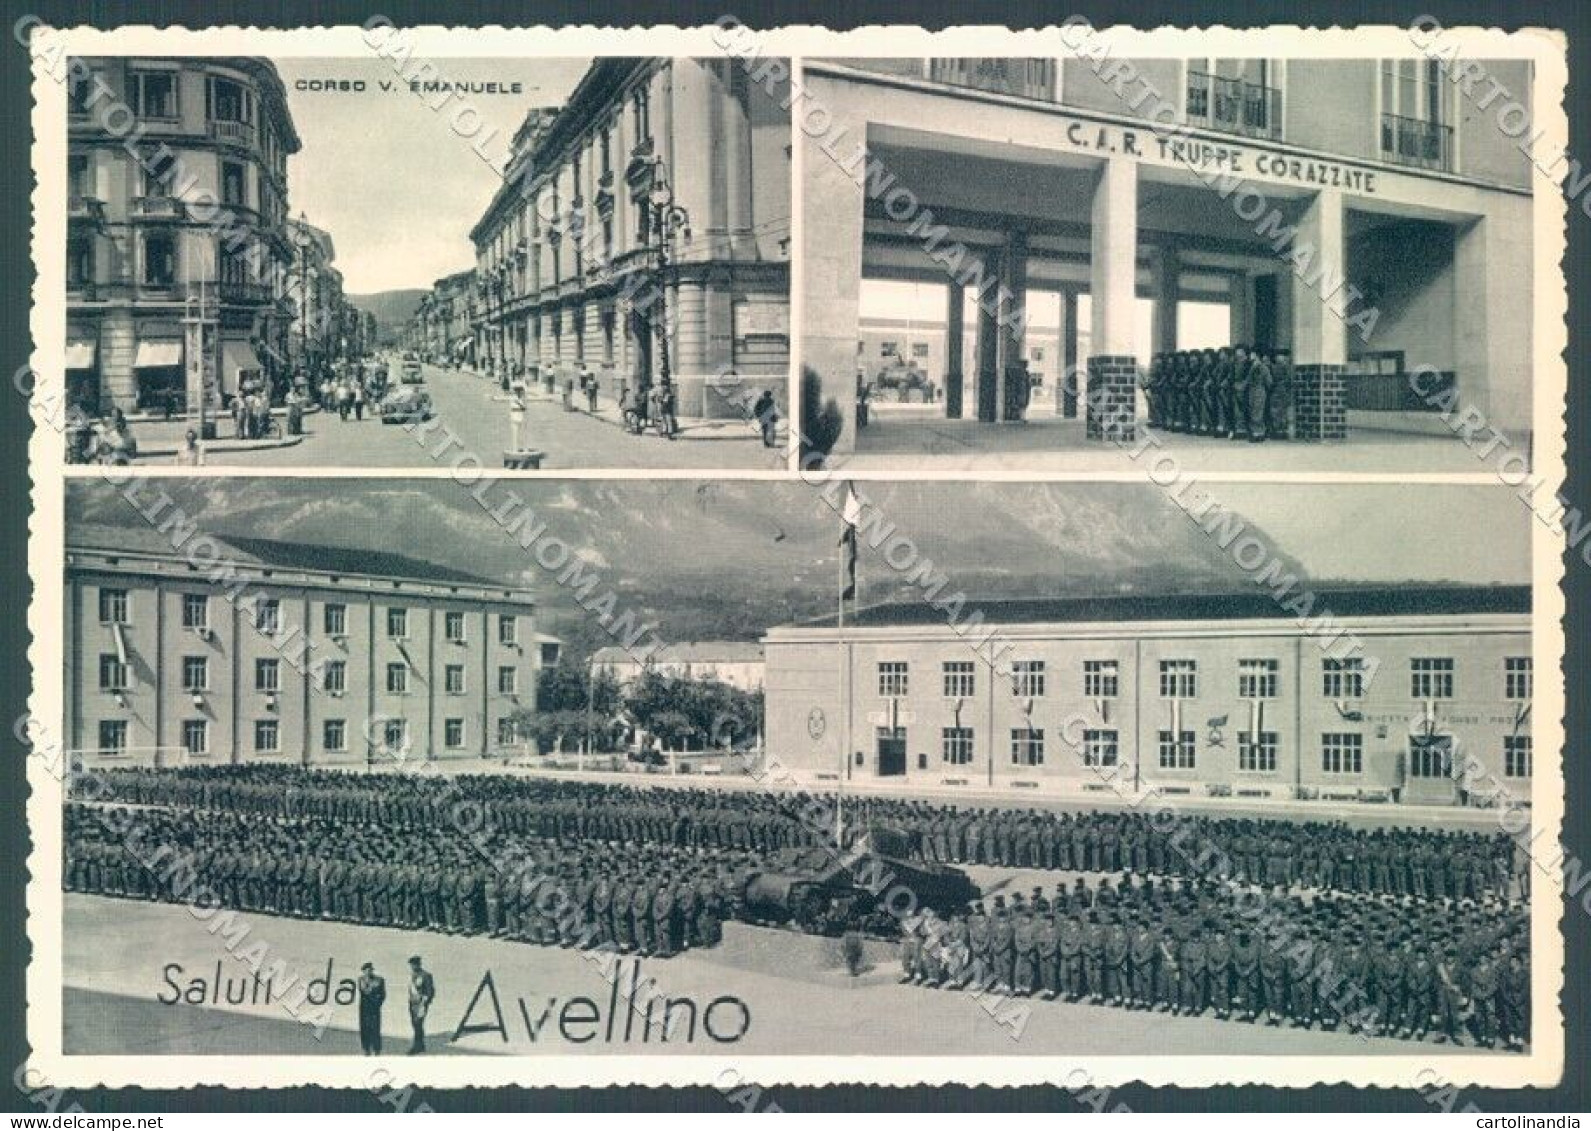 Avellino Città Militari Truppe Corazzate Saluti Da Foto FG Cartolina JK1527 - Avellino